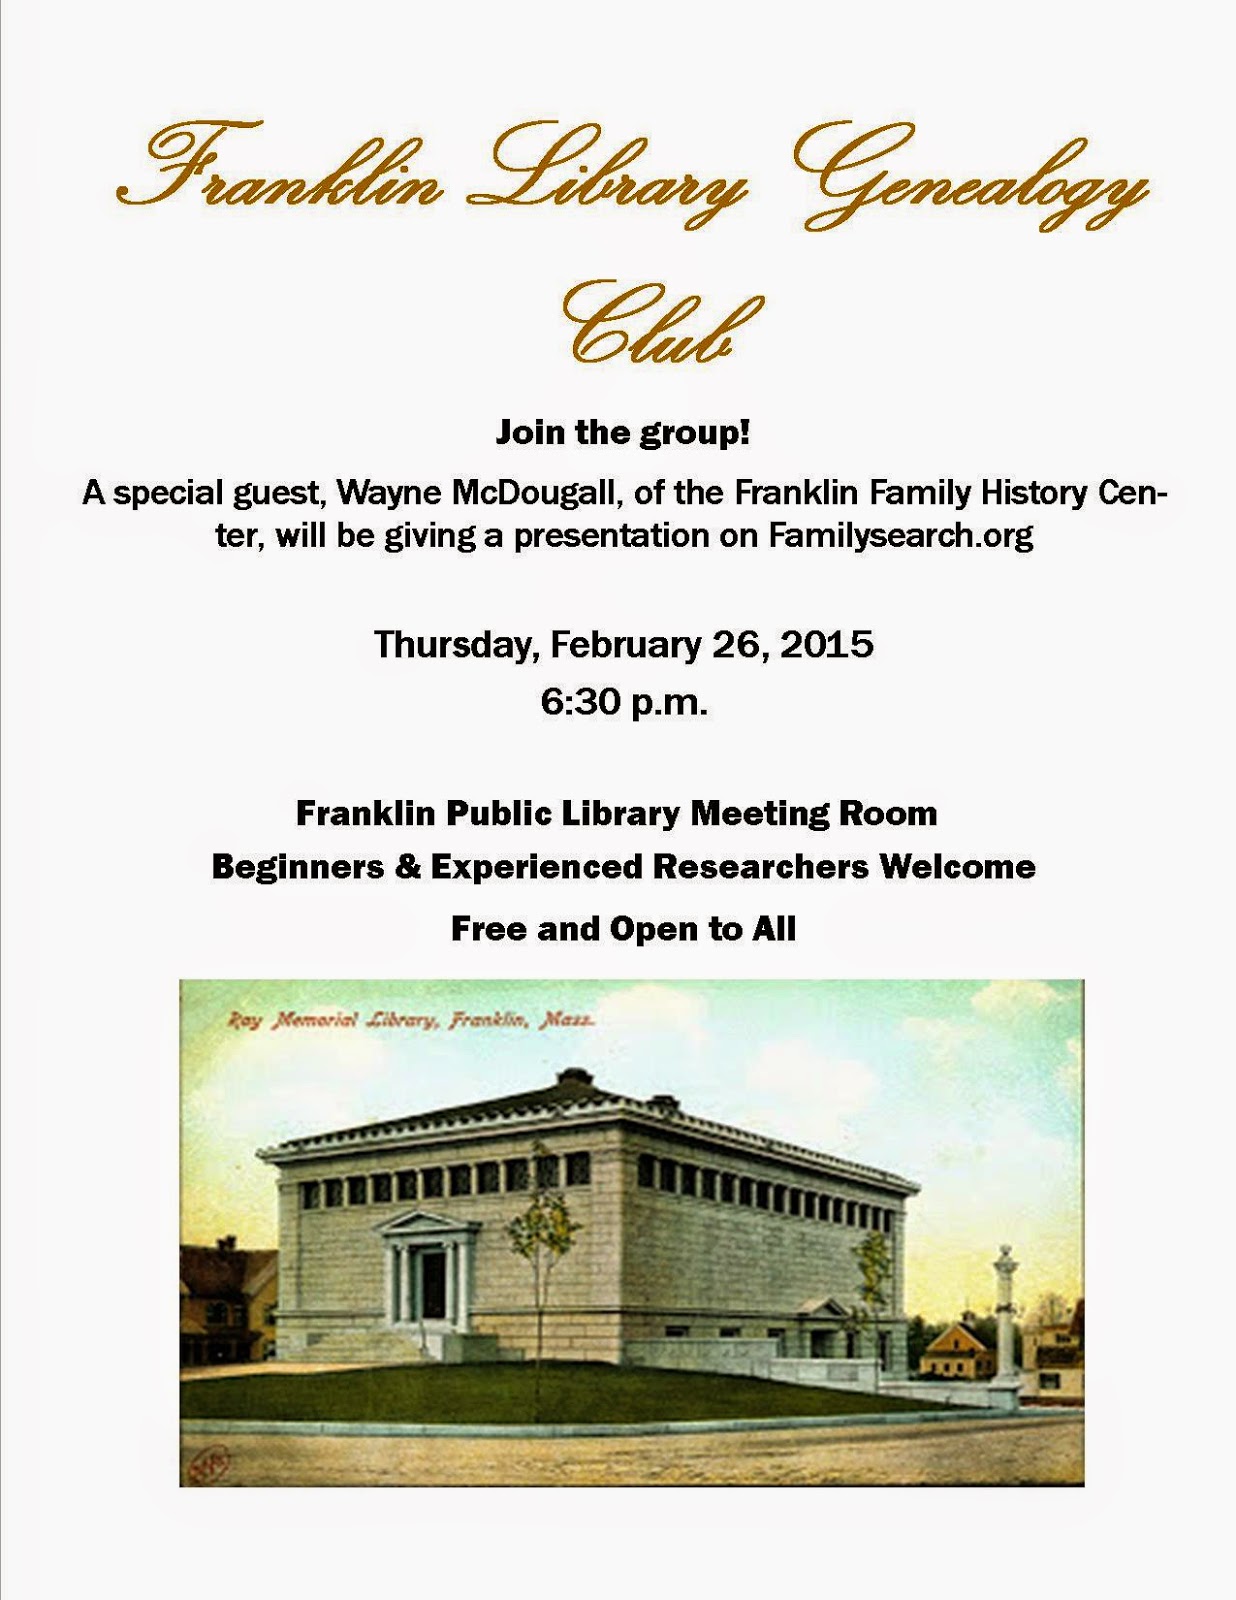 Geneology Club meeting Thursday, Feb 26th